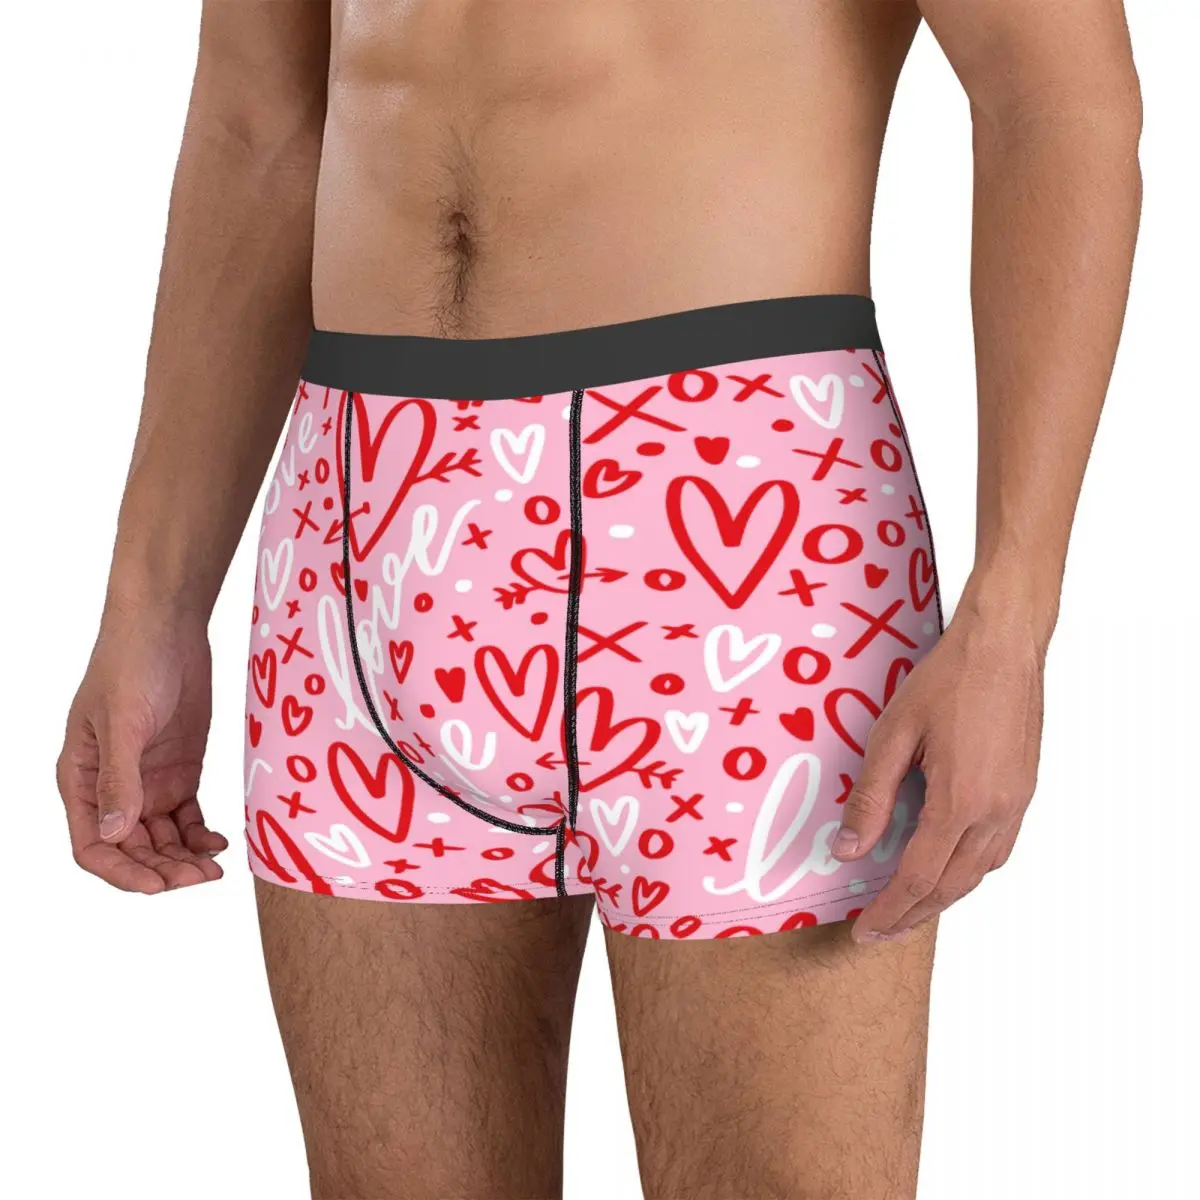 Шорты-трусы Humor Boxer с розовым сердечком, мужское нижнее белье, дышащие трусы для мужчин 3